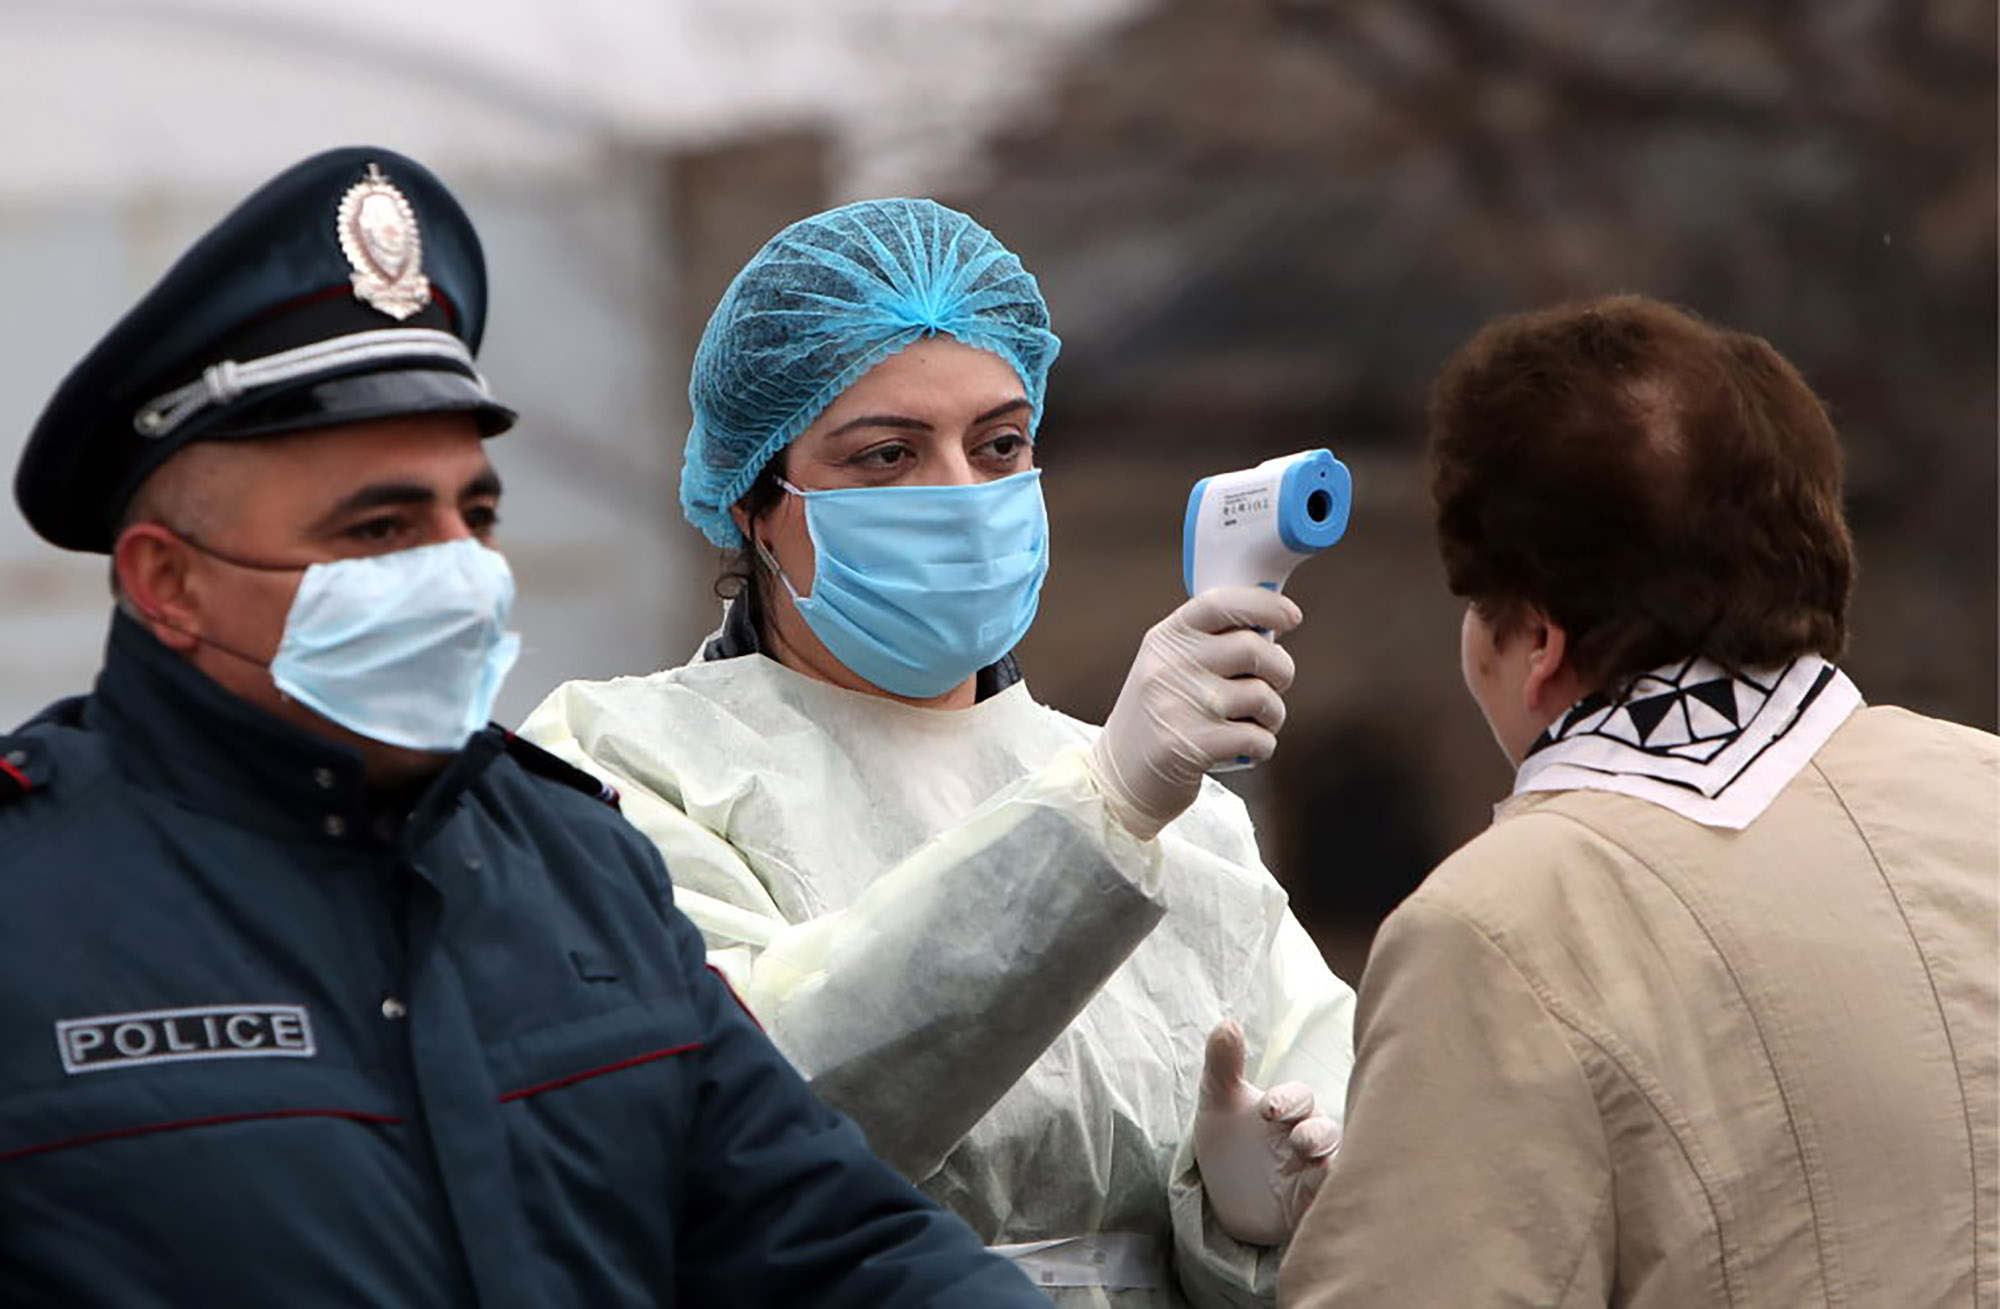 Ermənistanda koronavirusa yoluxanların sayı kəskin artdı - 2 nəfər öldü